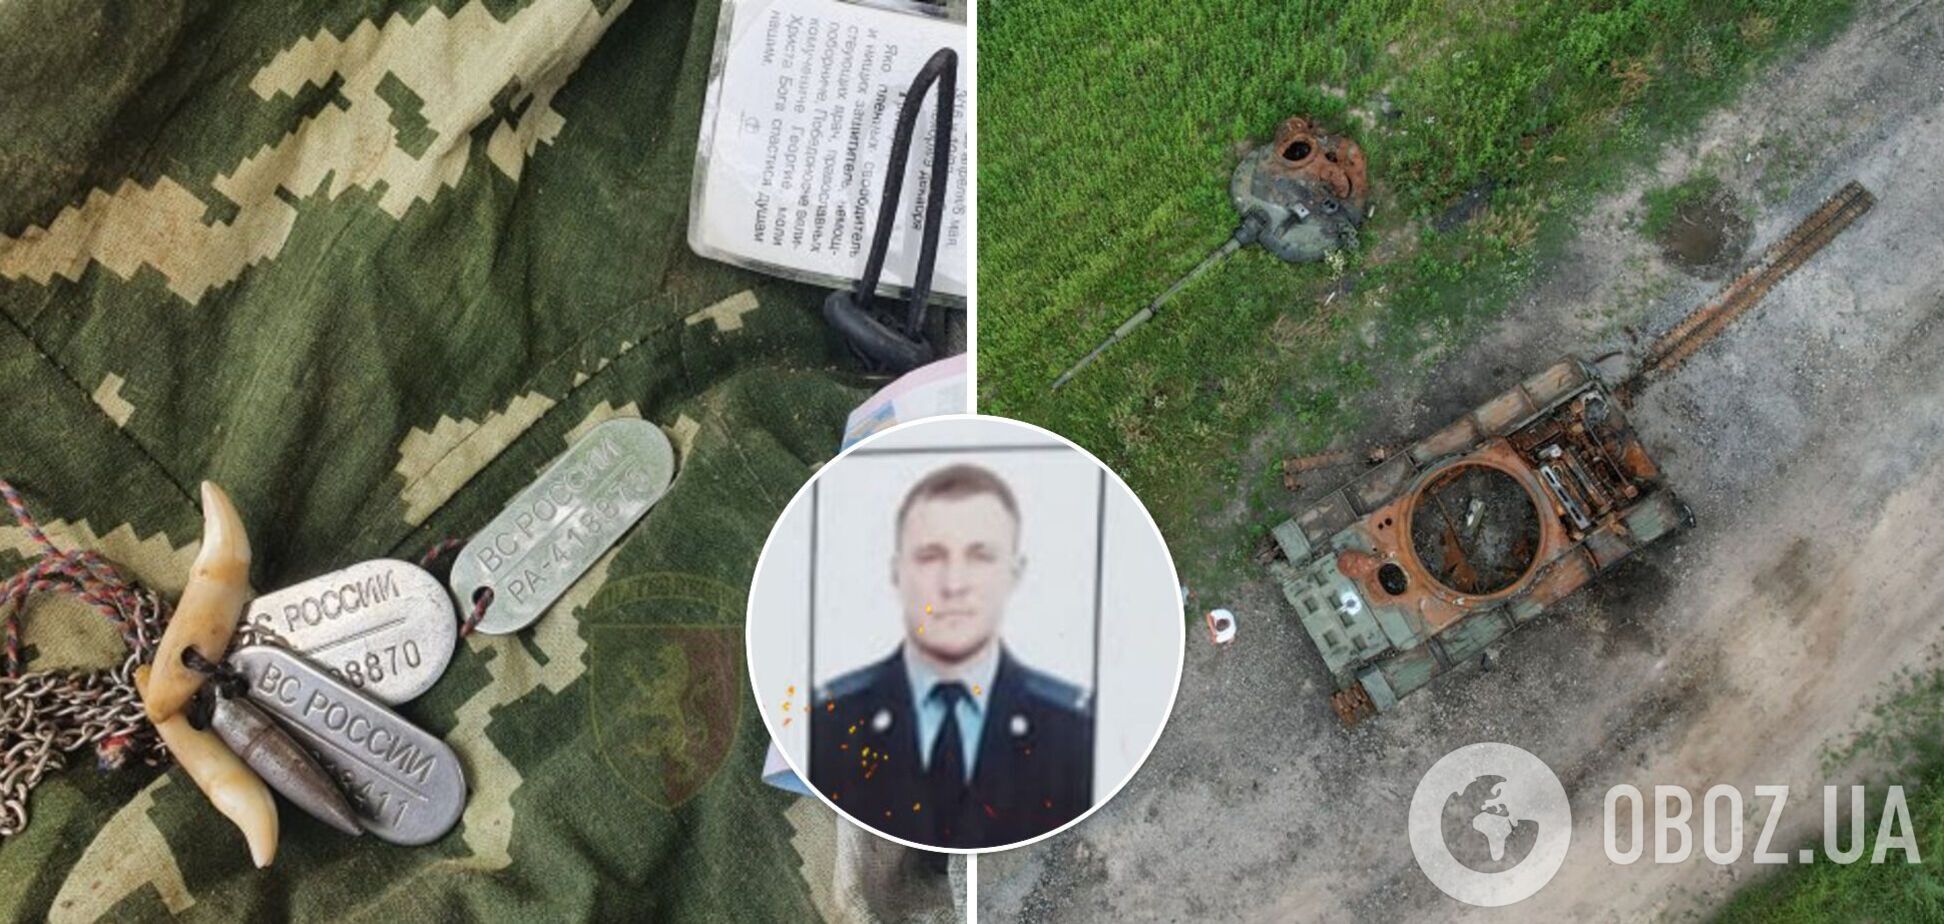 В Україні ліквідували підполковника центру спецпризначення ФСБ Горбаня. Фото